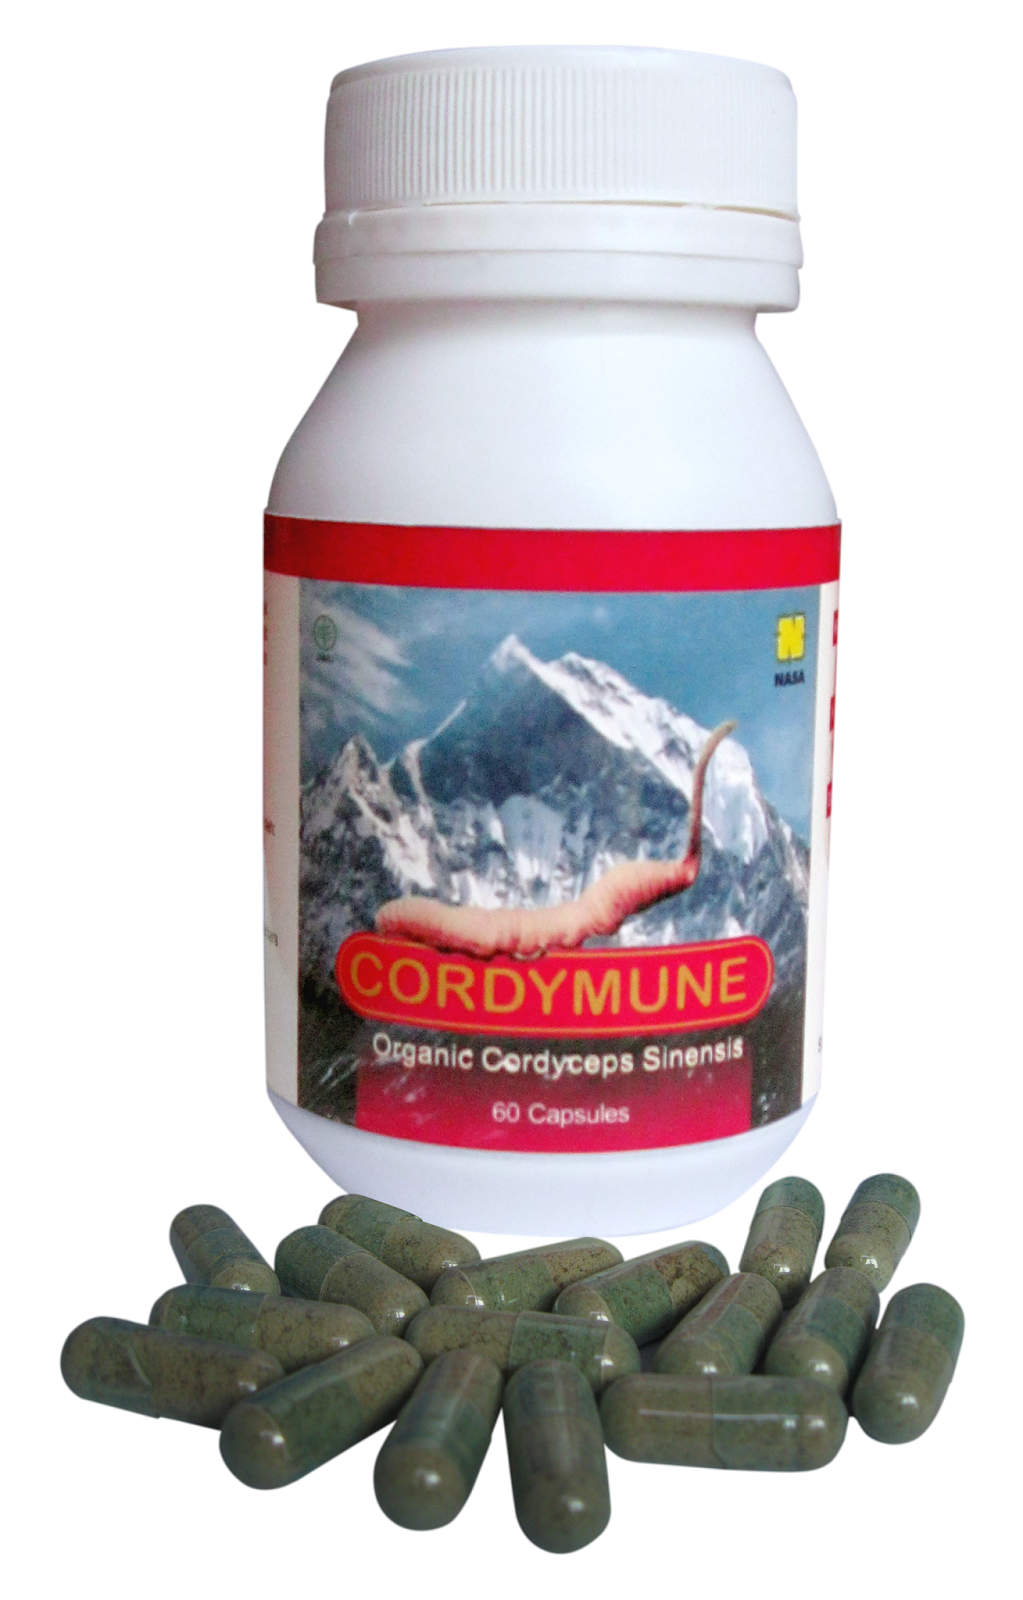 cordymune, cordymune asli, cordymune original, cordymune nasa, distributor cordymune, cordymune jogja, manfaat cordymune, khasiat cordymune, toko kasimura, kasimura herbal